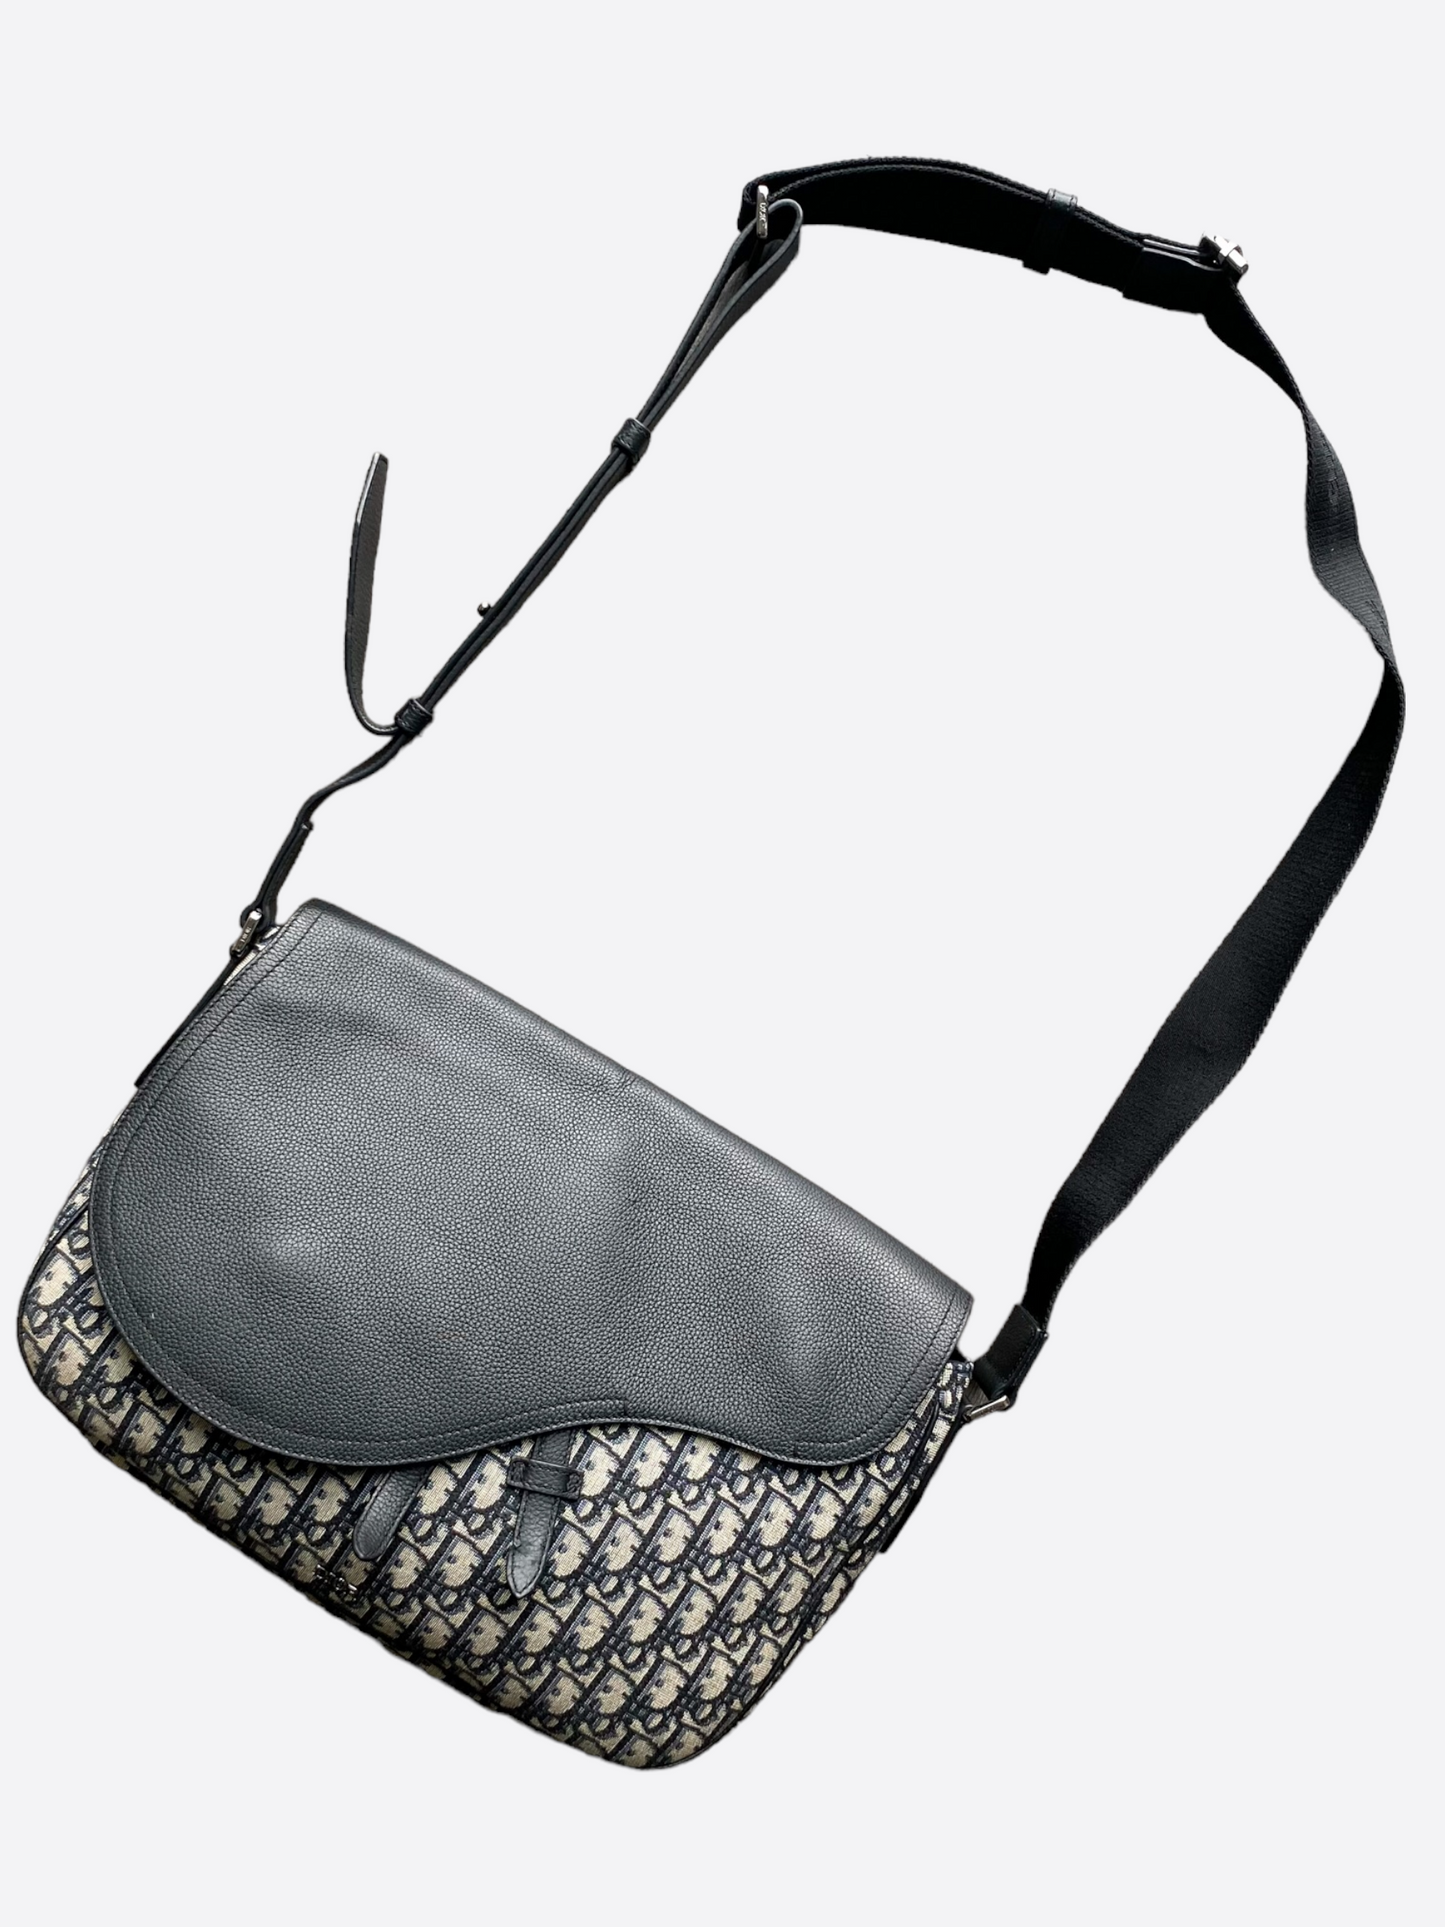 Dior Oblique Large Saddle Messenger Bag